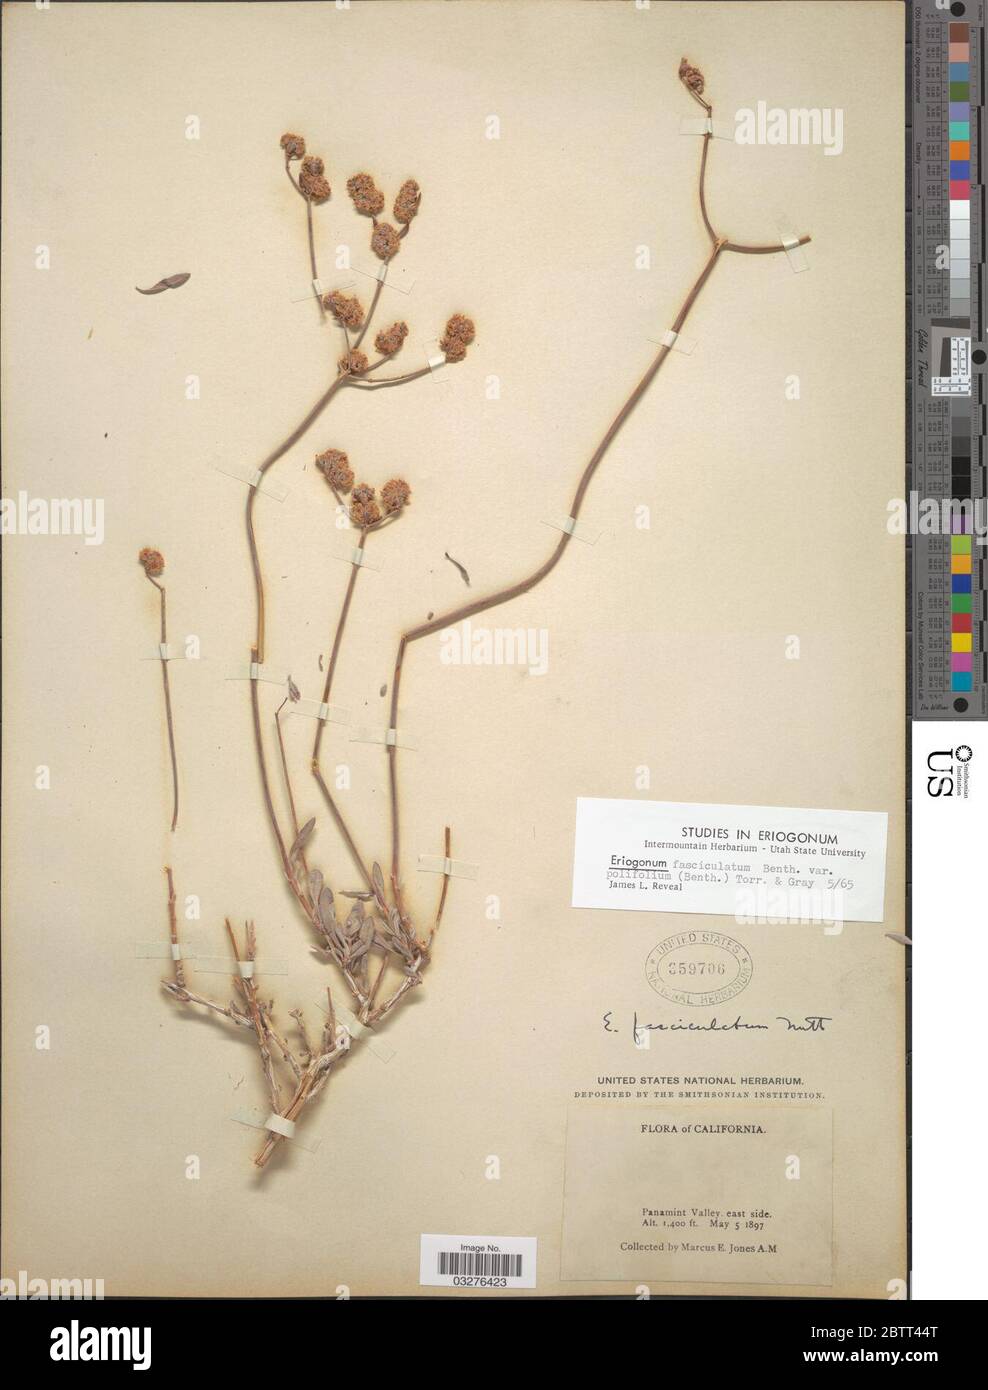 Eriogonum fasciculatum var polifolium Benth Torr A Gray. Stock Photo